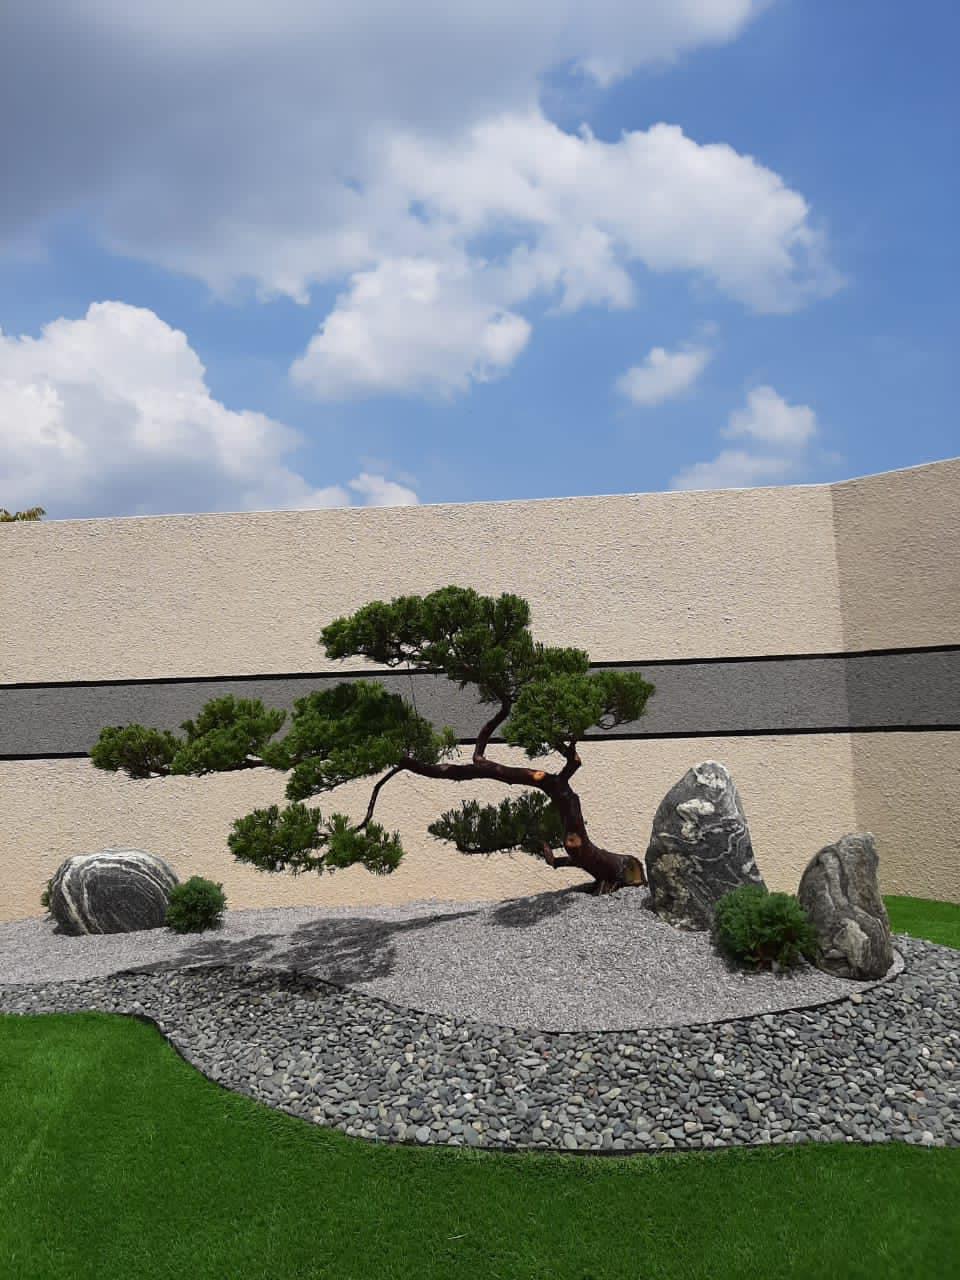 Pomysł na japoński ogród skalny - nr 25 / 40 pomysłów na zen w ogrodzie